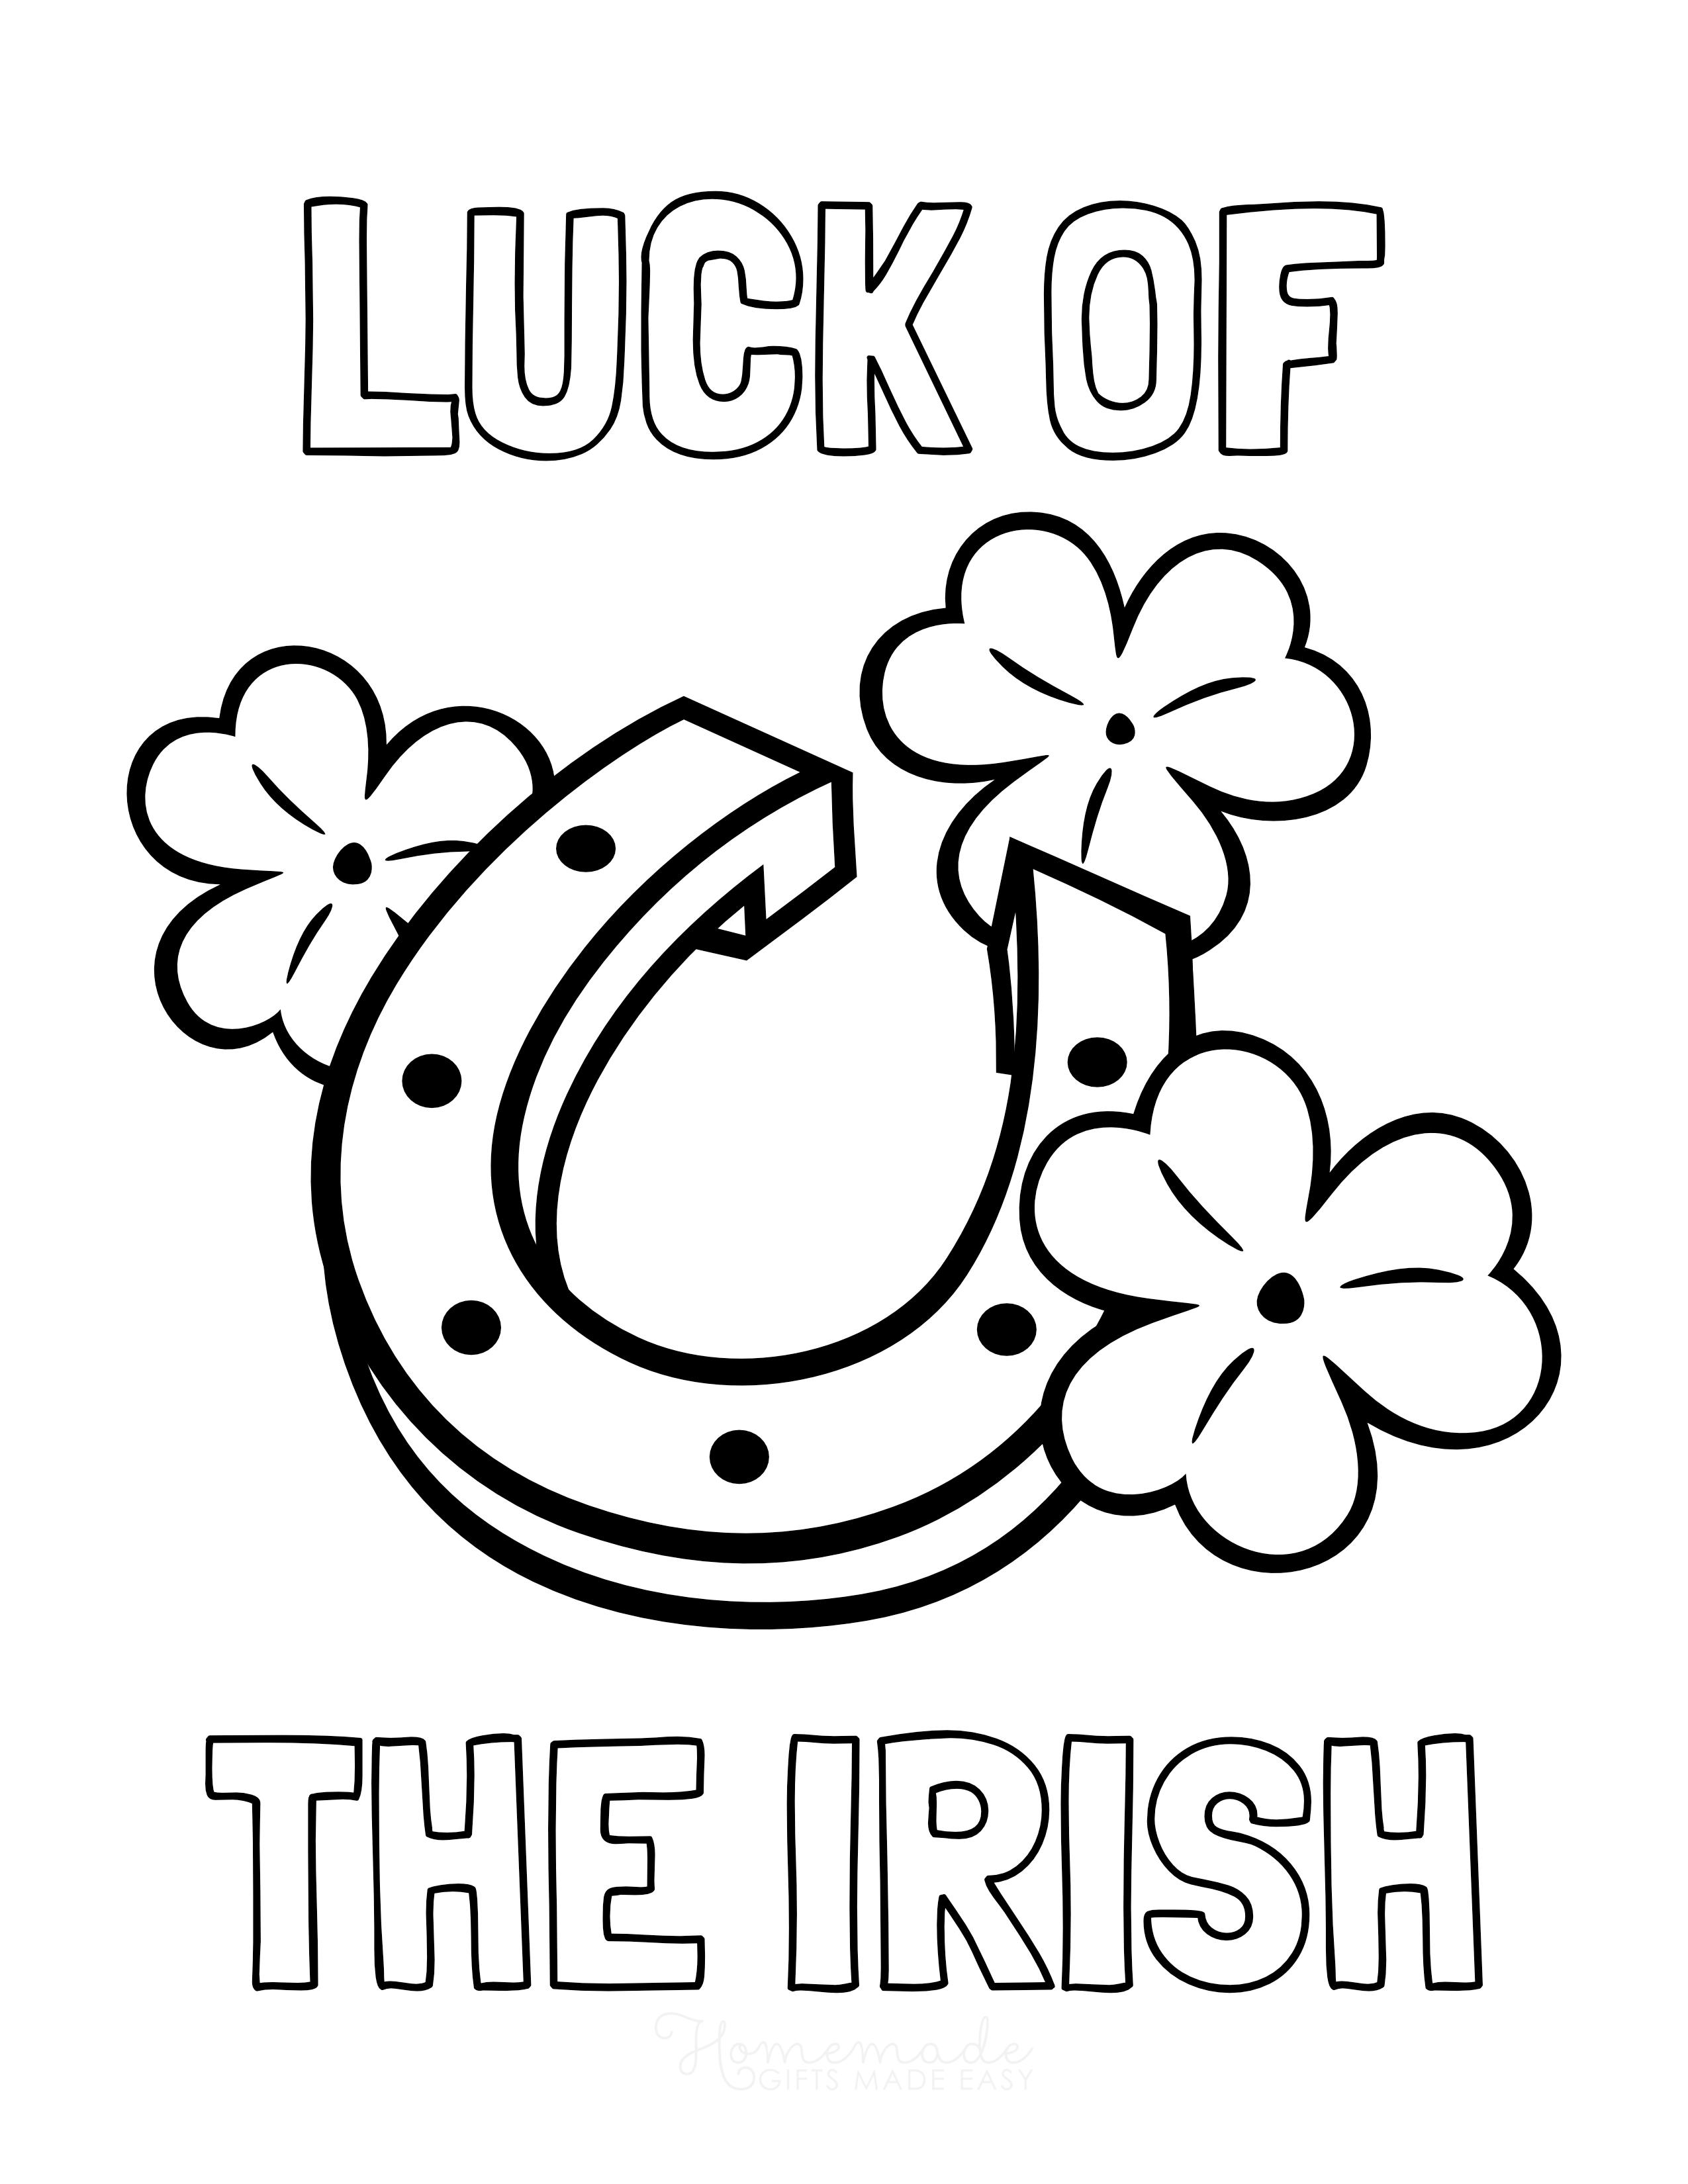 Página para colorear de la suerte de los irlandeses